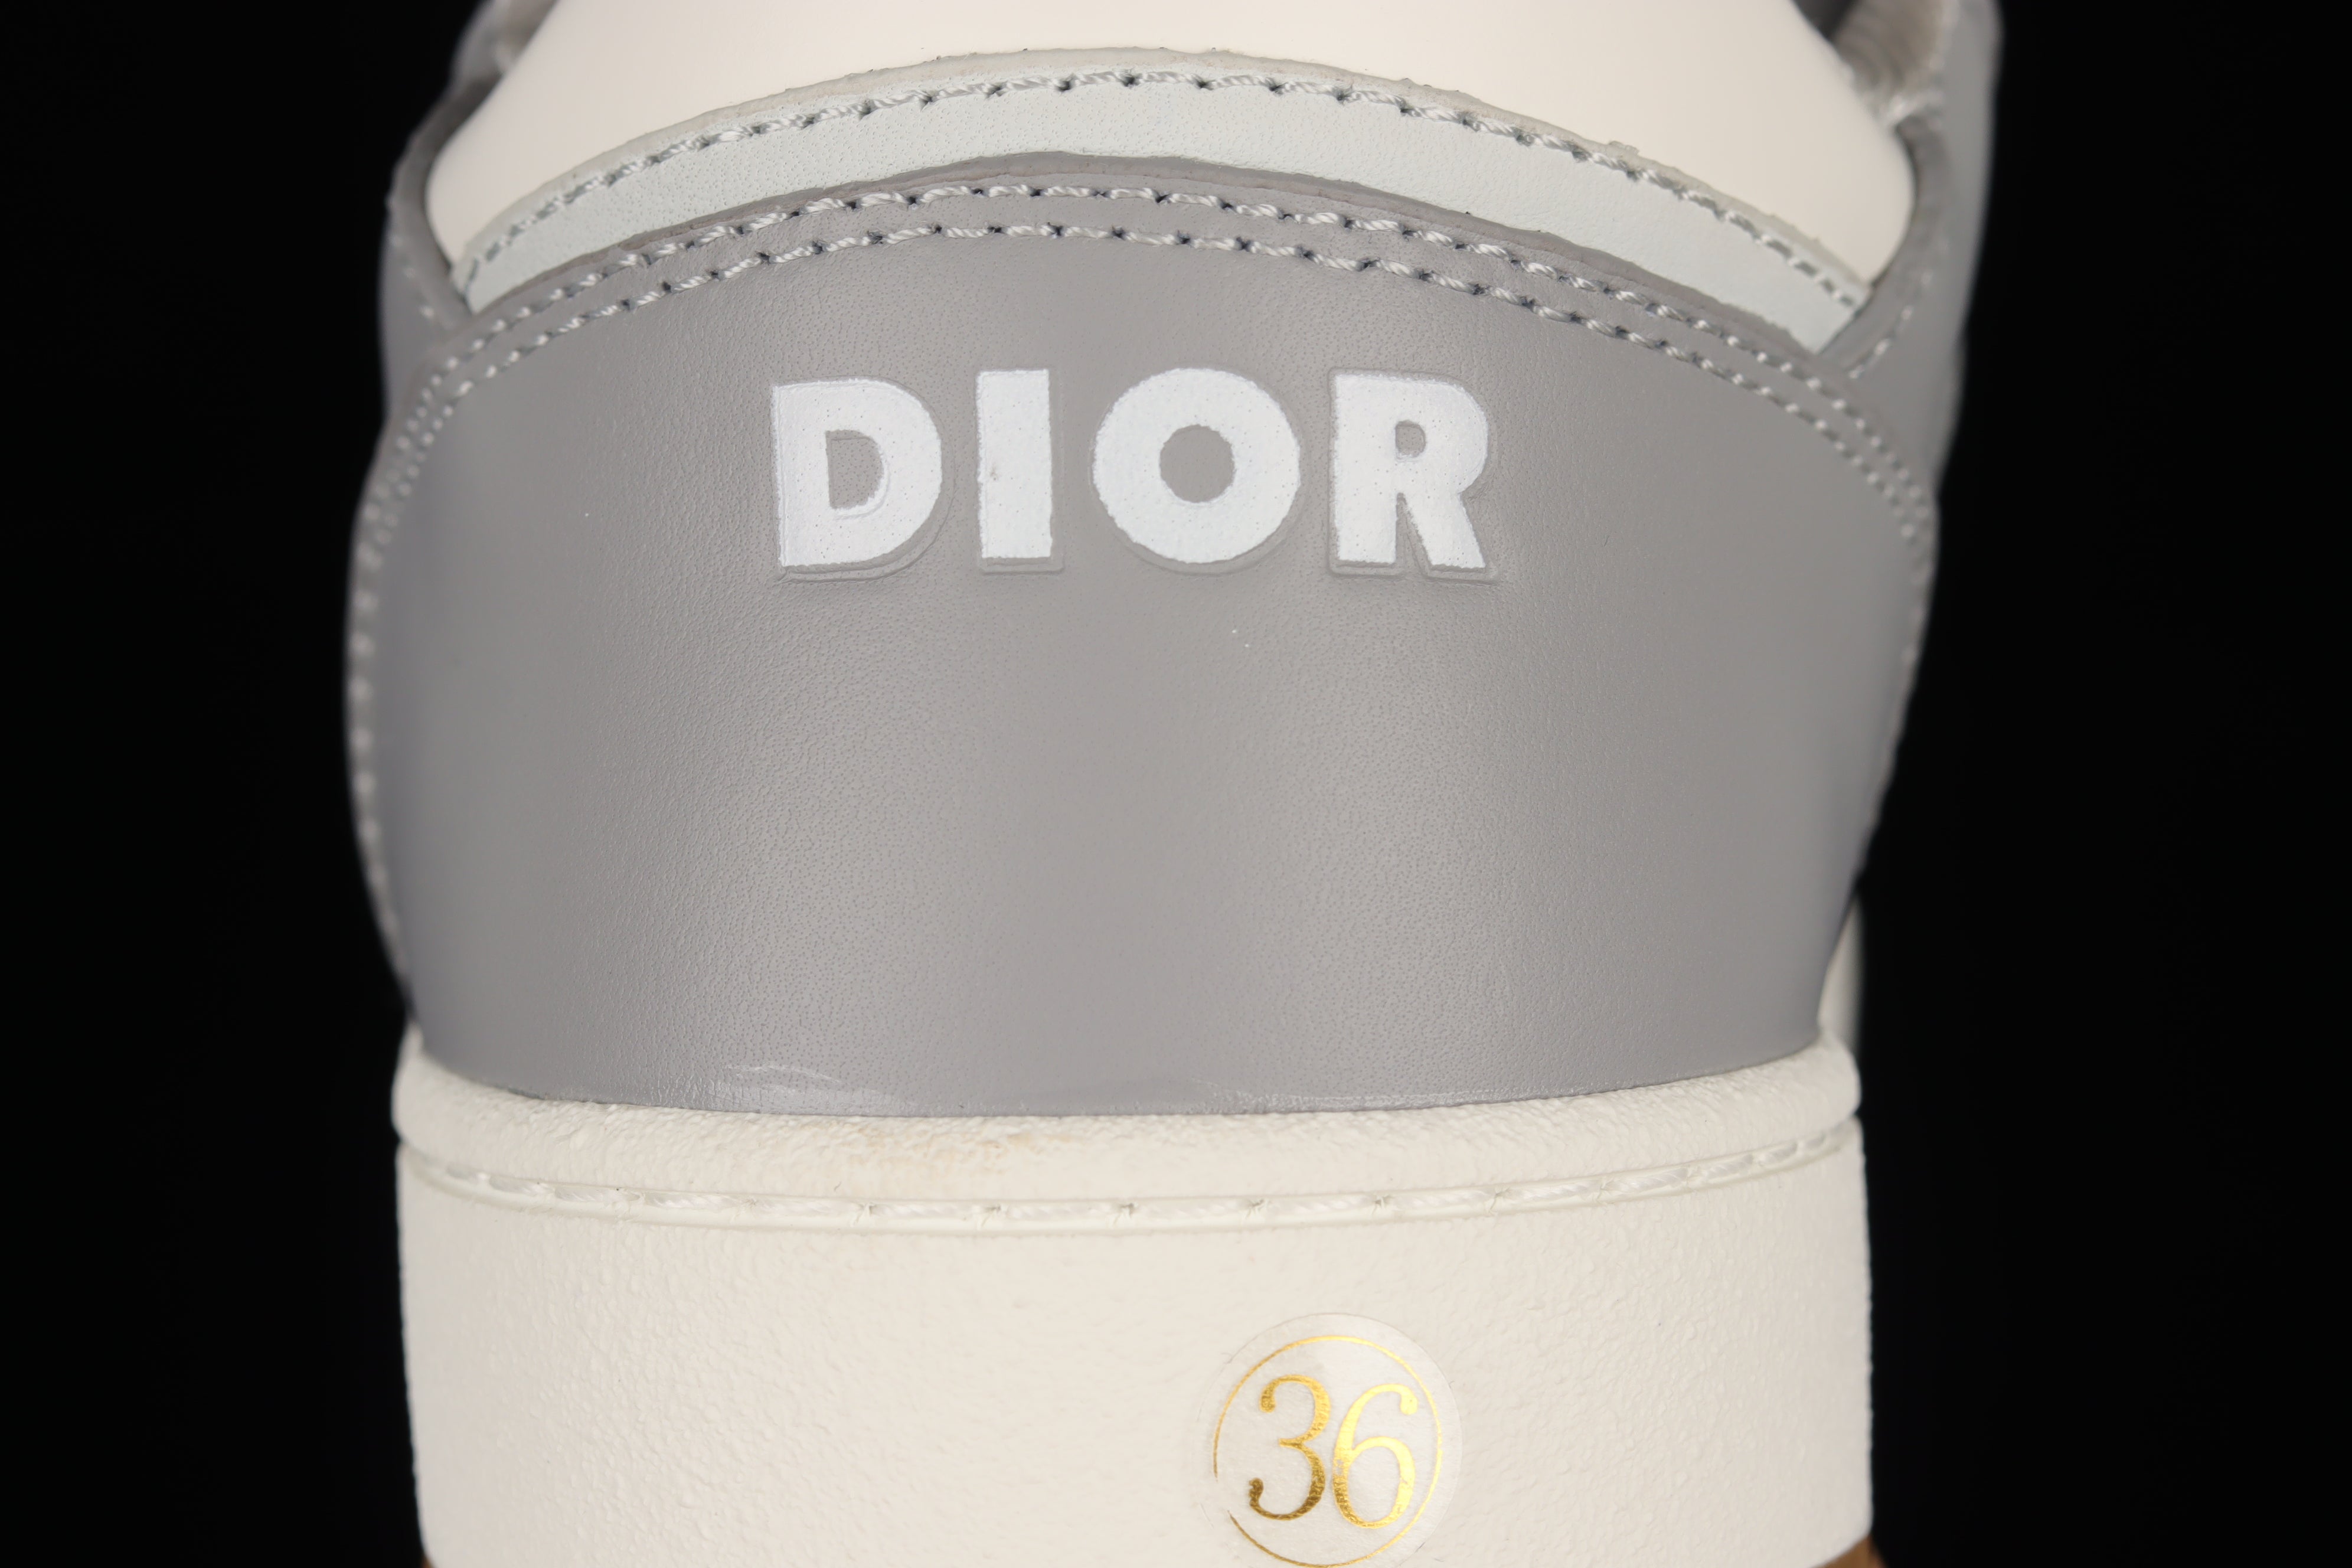 DiorMens B27 Low Oblique - White